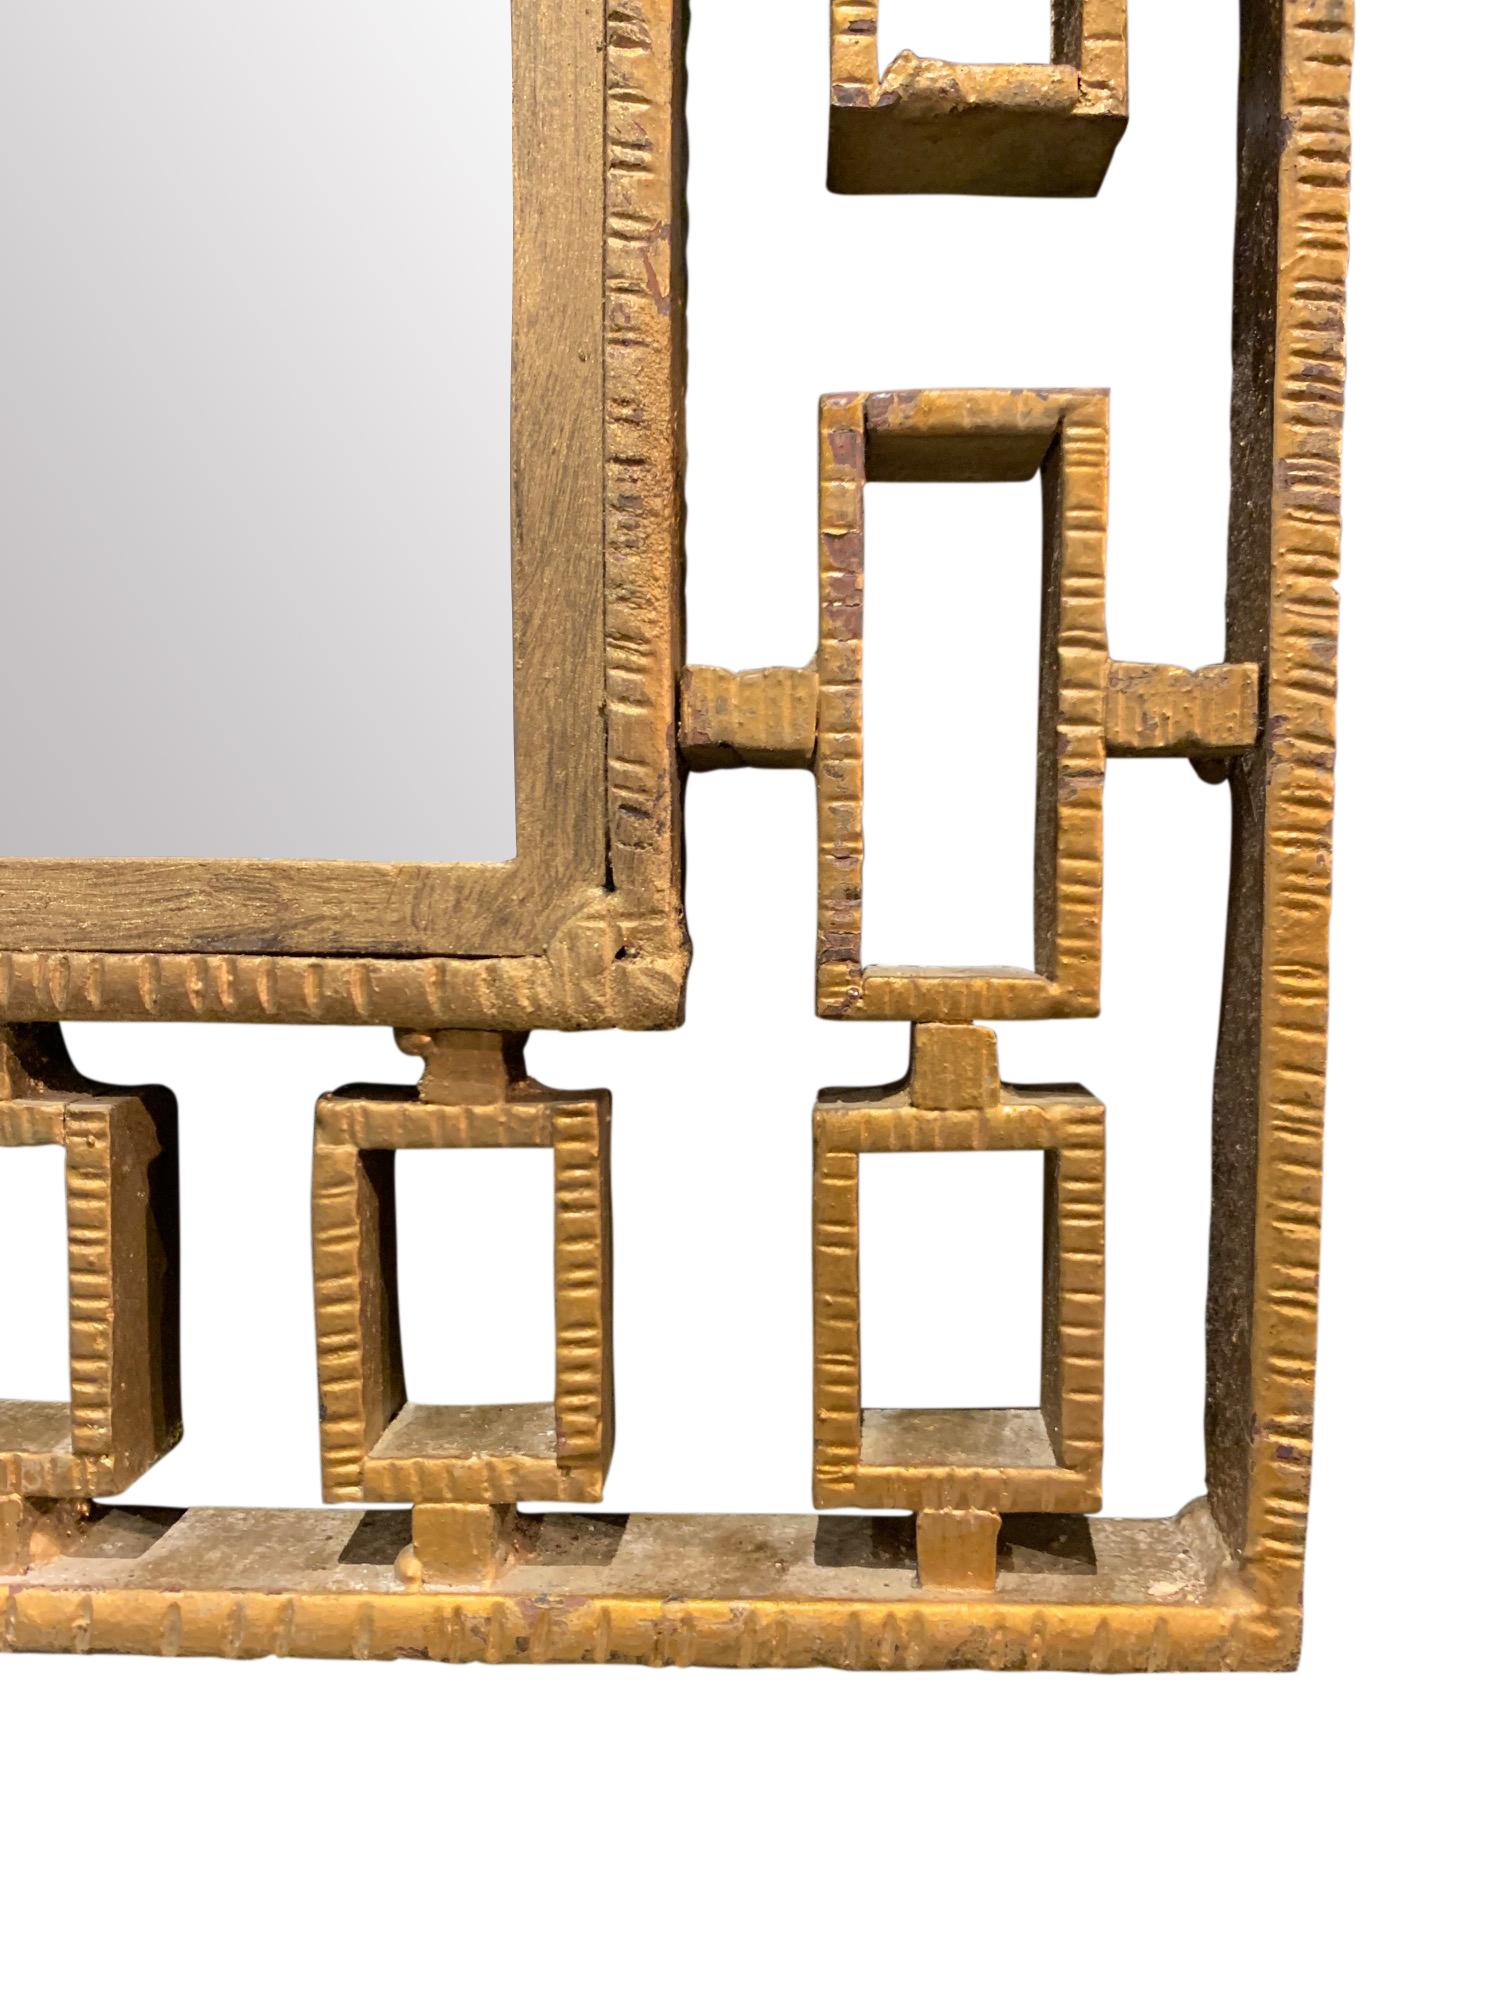 Grand miroir espagnol des années 1960, encadré de fer doré.
Dans le style de Jean Royere.
Peut être suspendu horizontalement ou verticalement.
Une table console coordonnée est disponible (F2883).